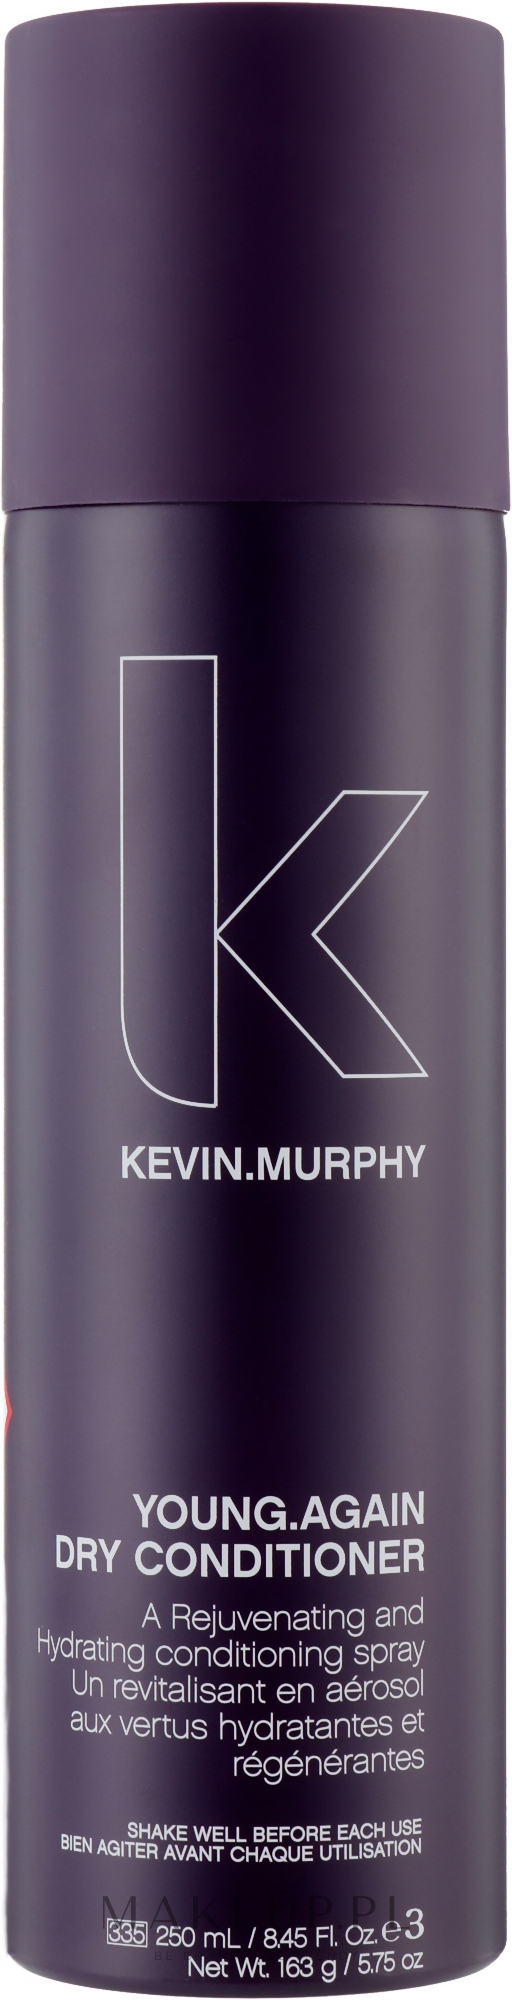 Odmładzająco-nawilżająca sucha odżywka w spray'u do włosów - Kevin.Murphy Young.Again Dry Conditioner — Zdjęcie 250 ml